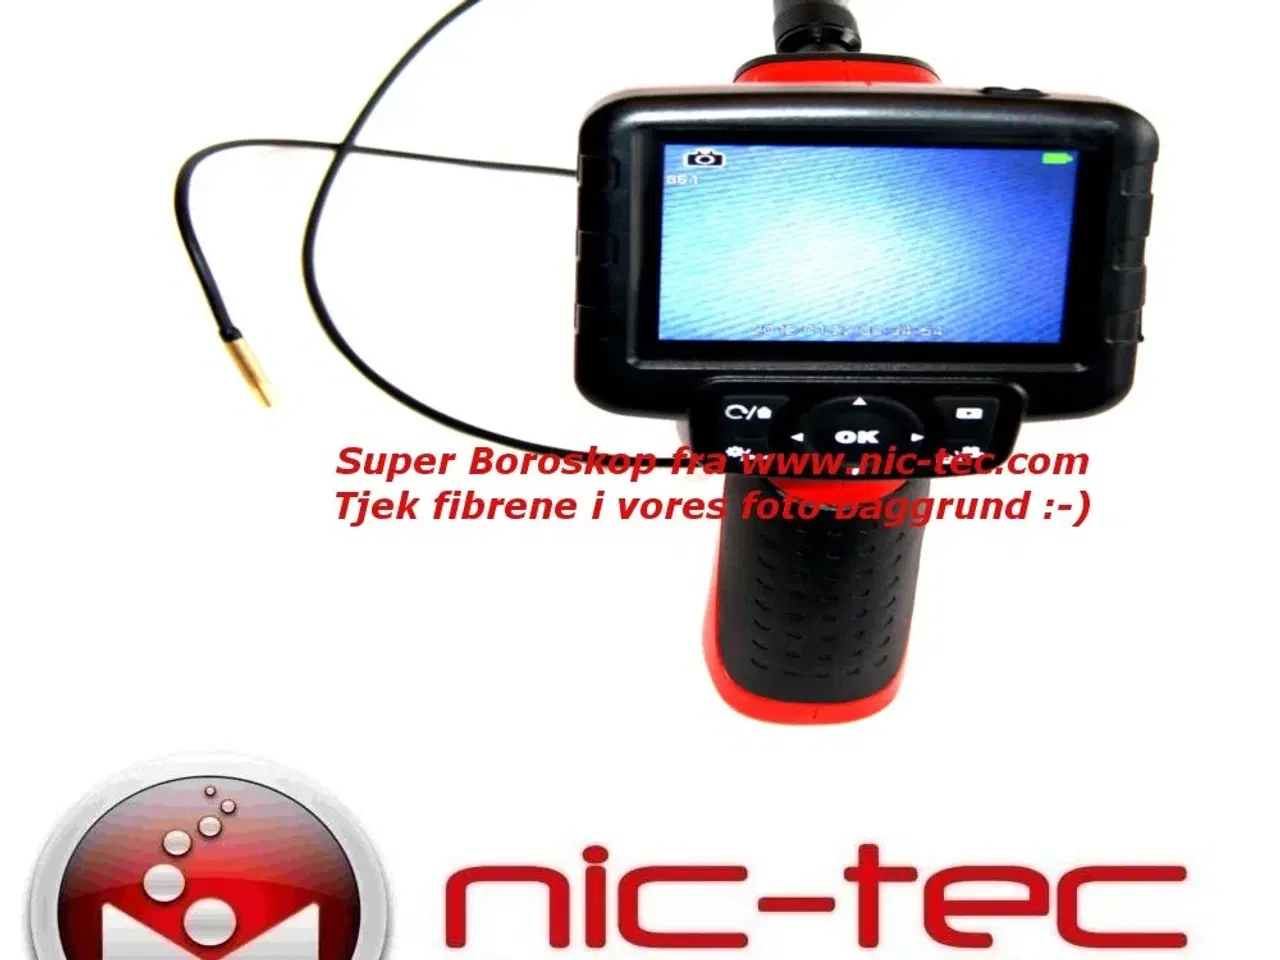 Billede 2 - Videoscope / Borescope / Endoscope med 3.5" farve skærm og Lion batteri & video out